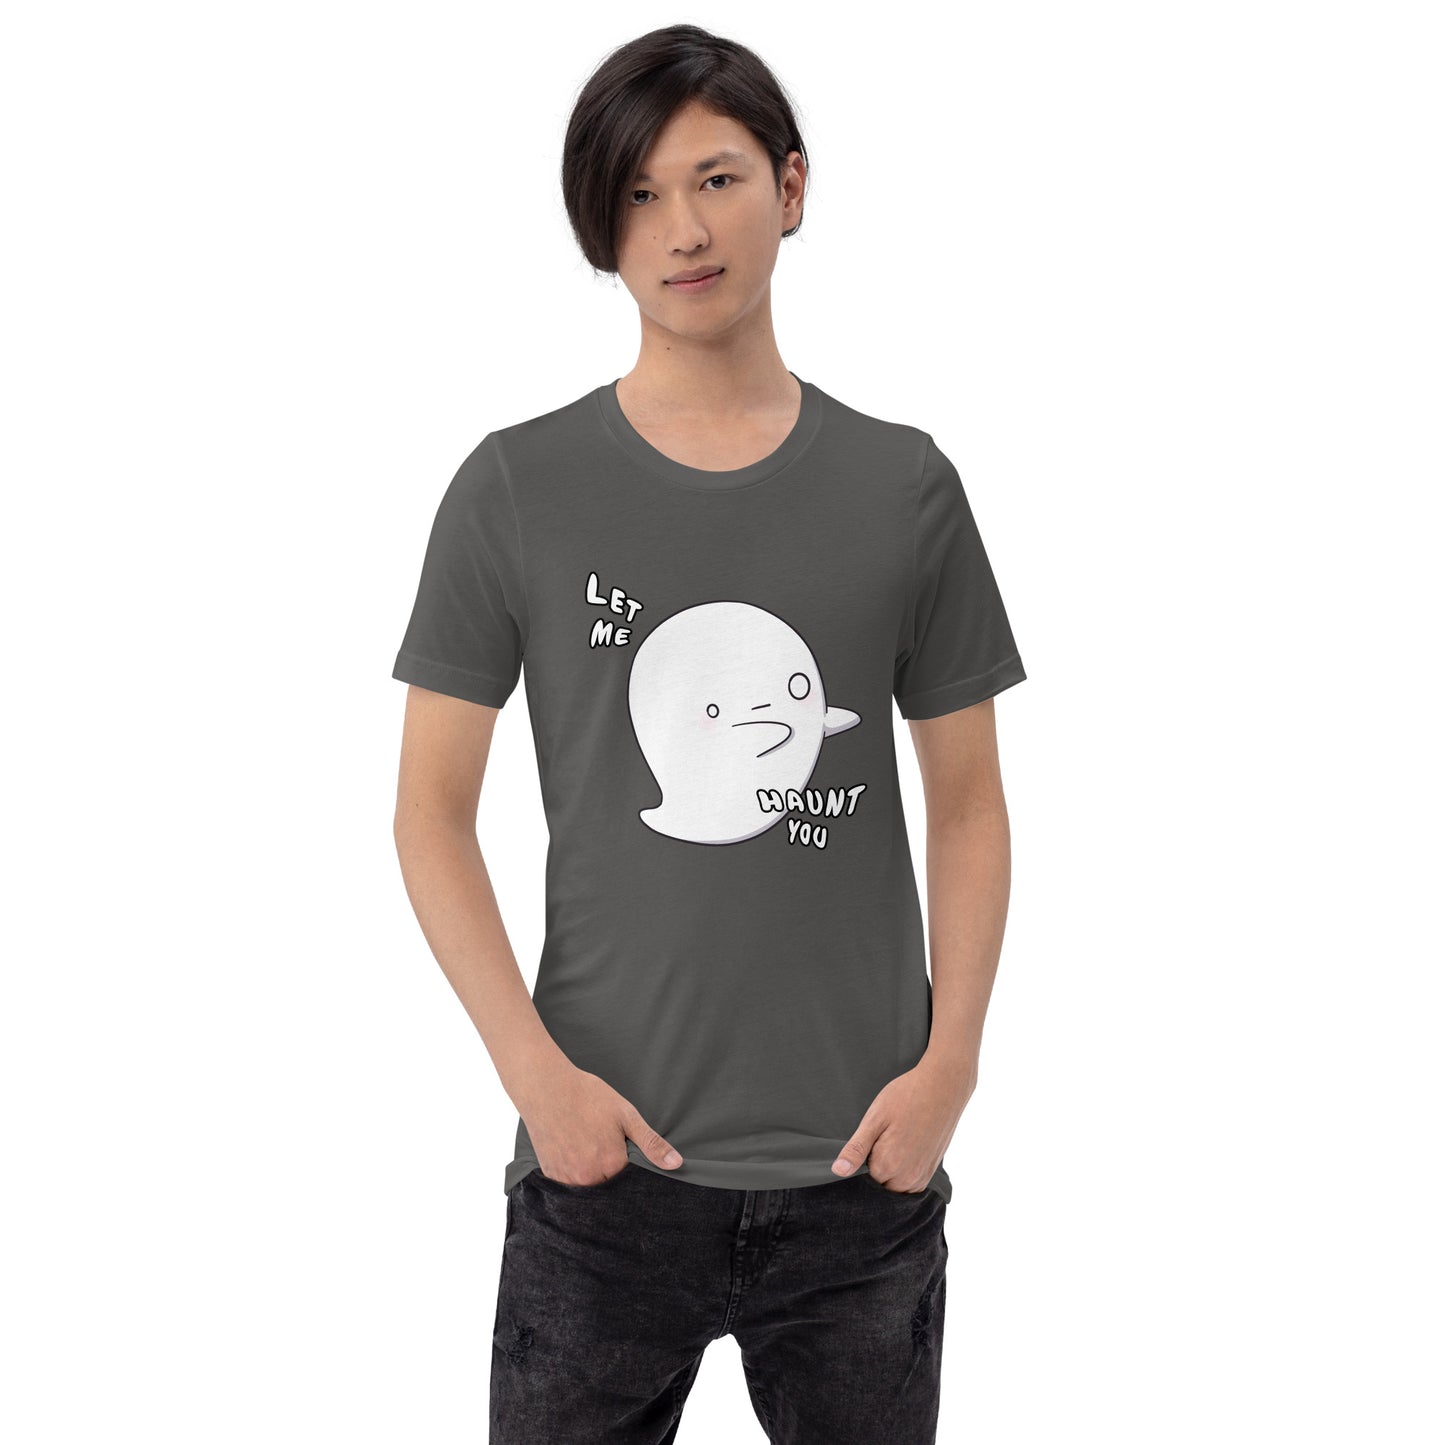 Let me haunt you - Unisex t-shirt